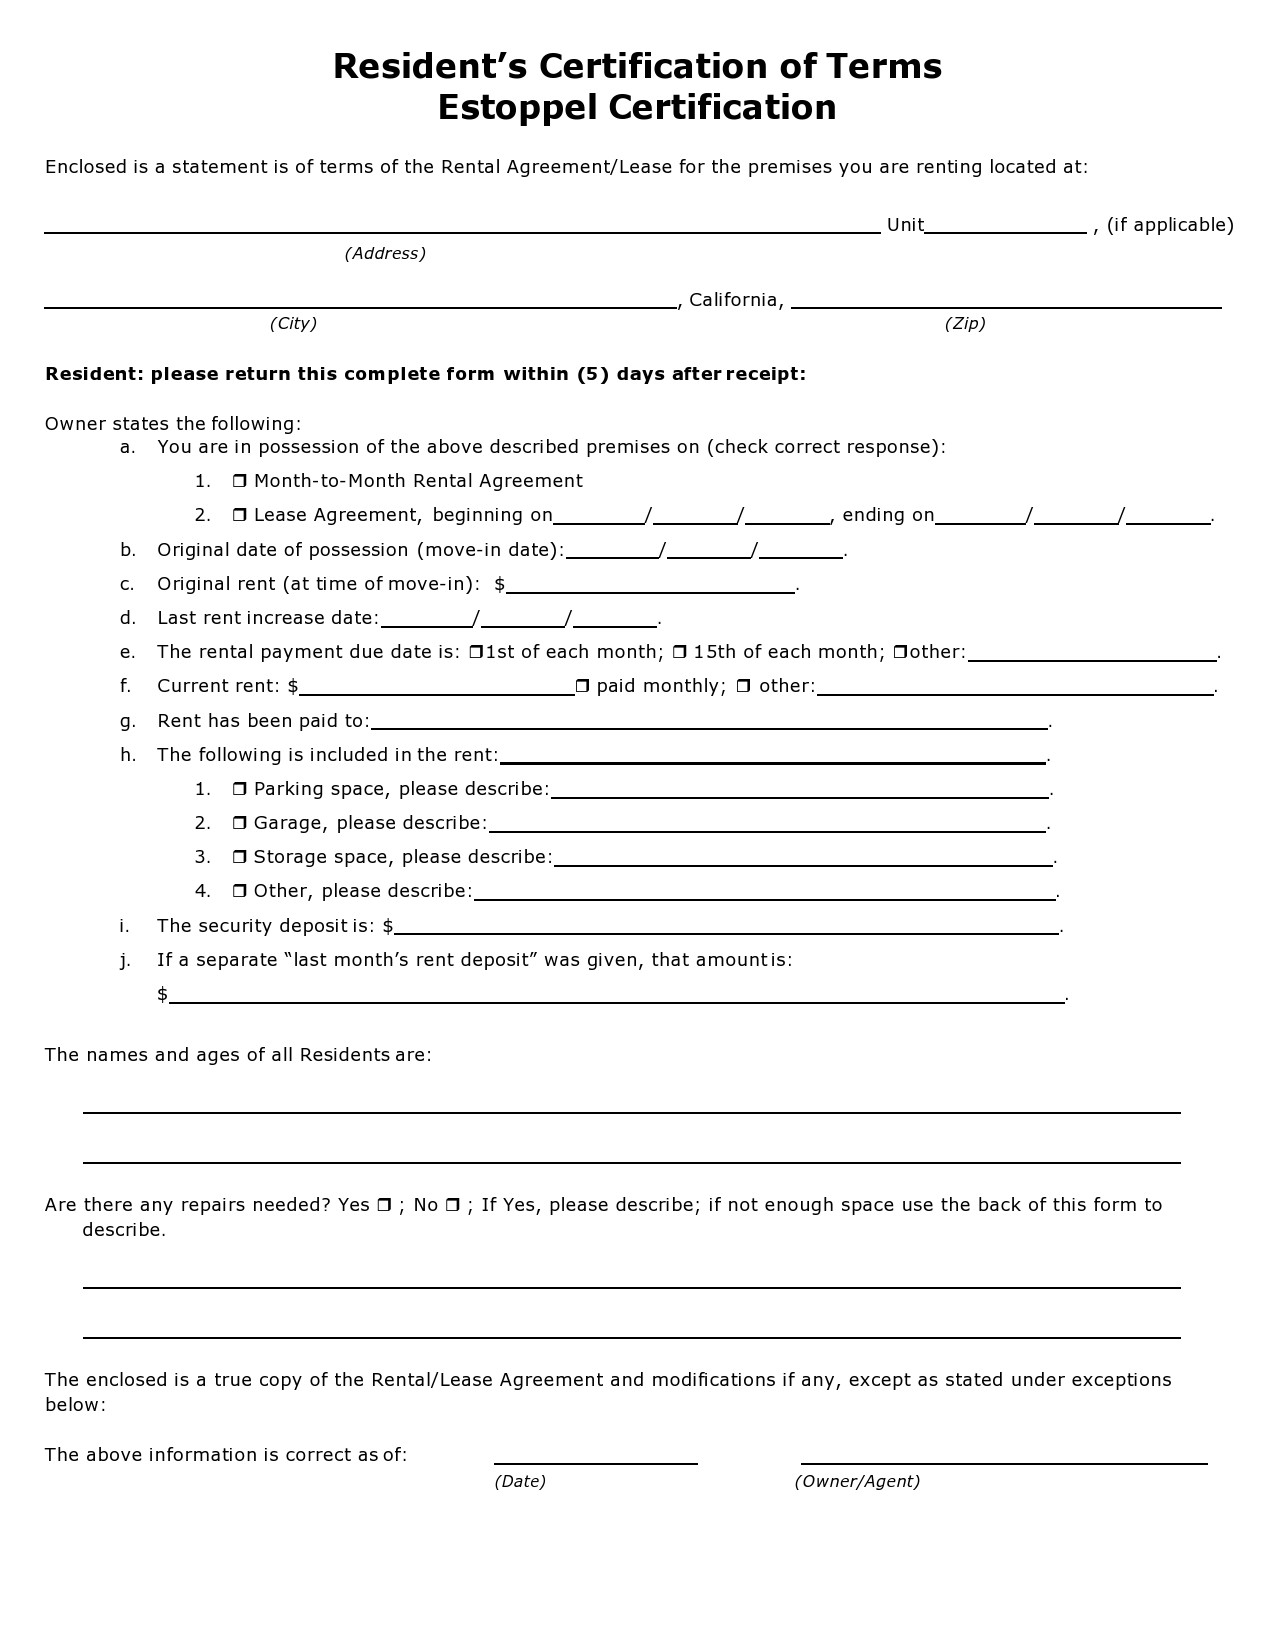 Free estoppel certificate form 32